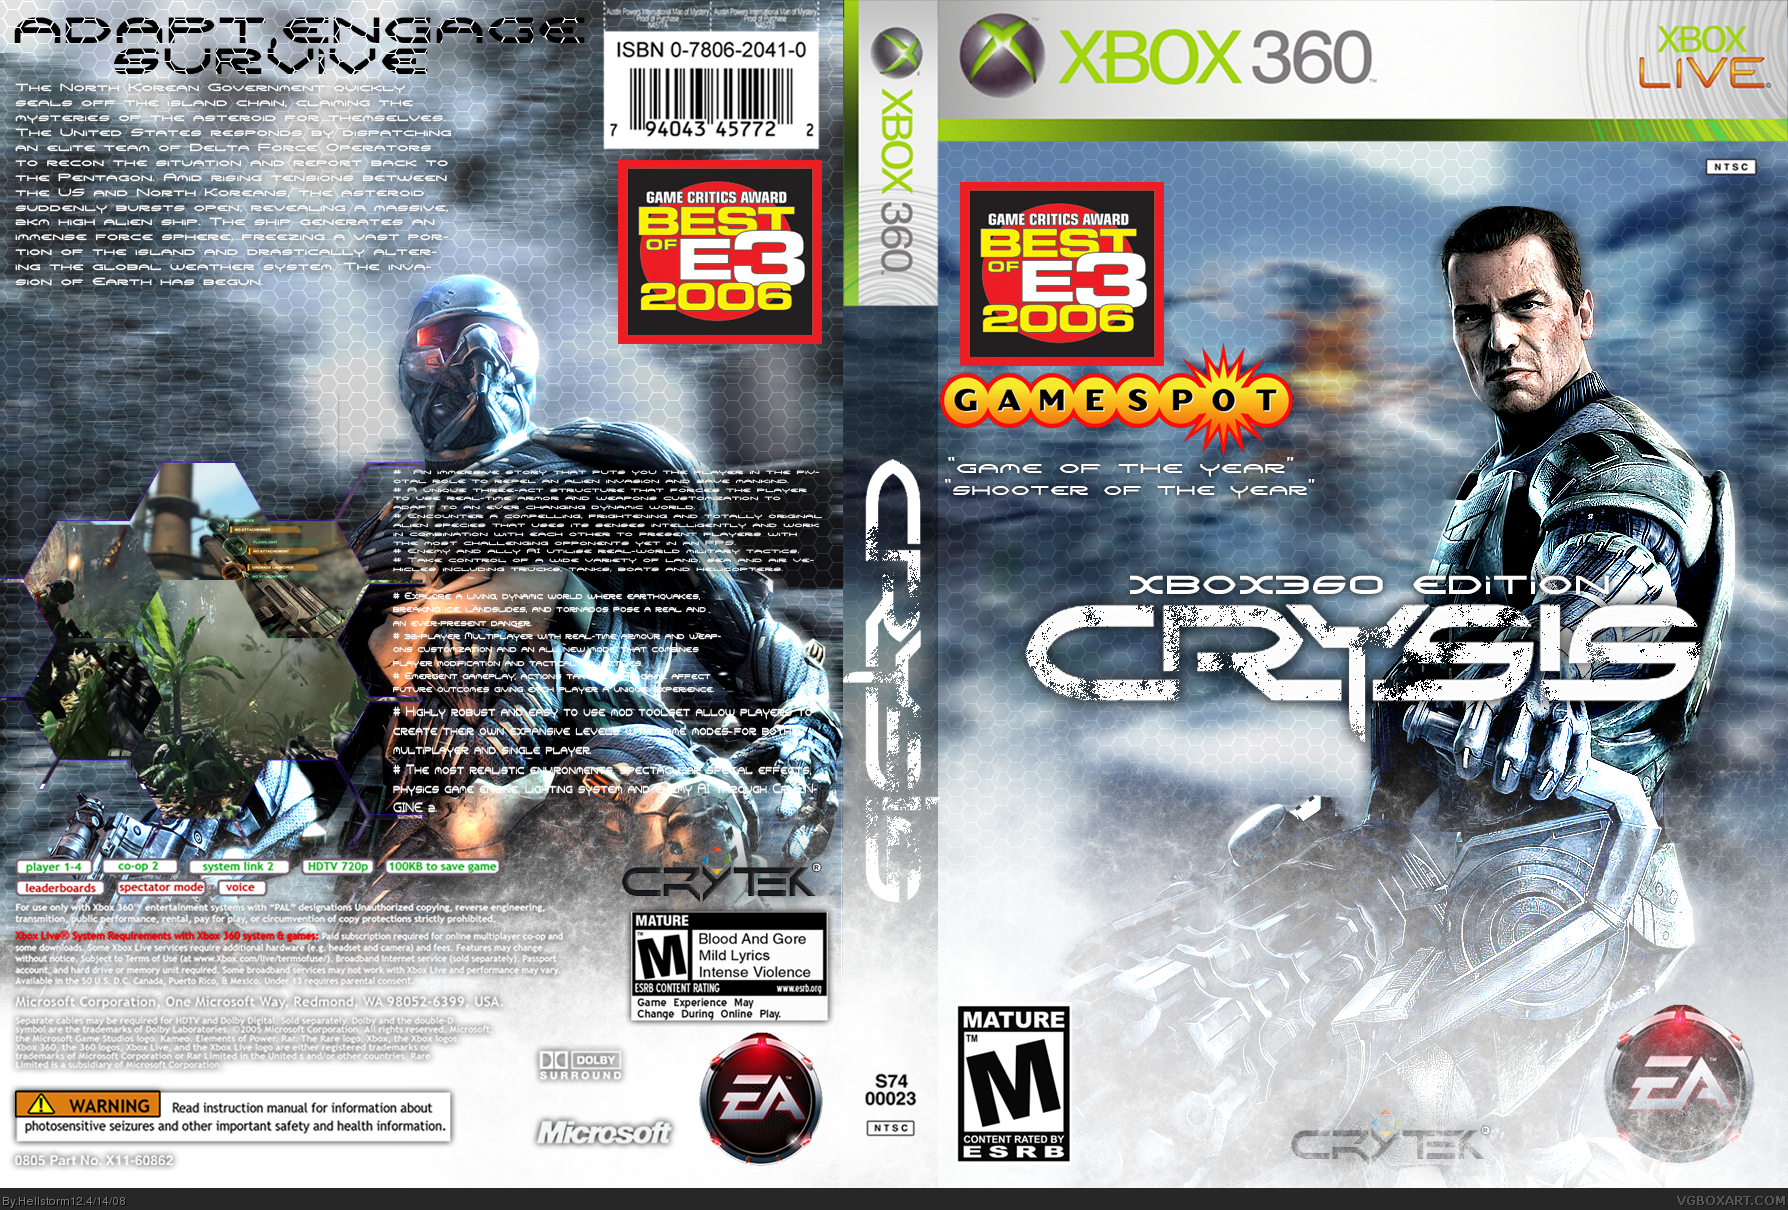 Код игры 360. Crysis 3 Xbox 360 обложка. Crysis 3 Xbox 360 диск. Крайзис 1 на Икс бокс 360. Крайзис 1 диск Xbox 360.